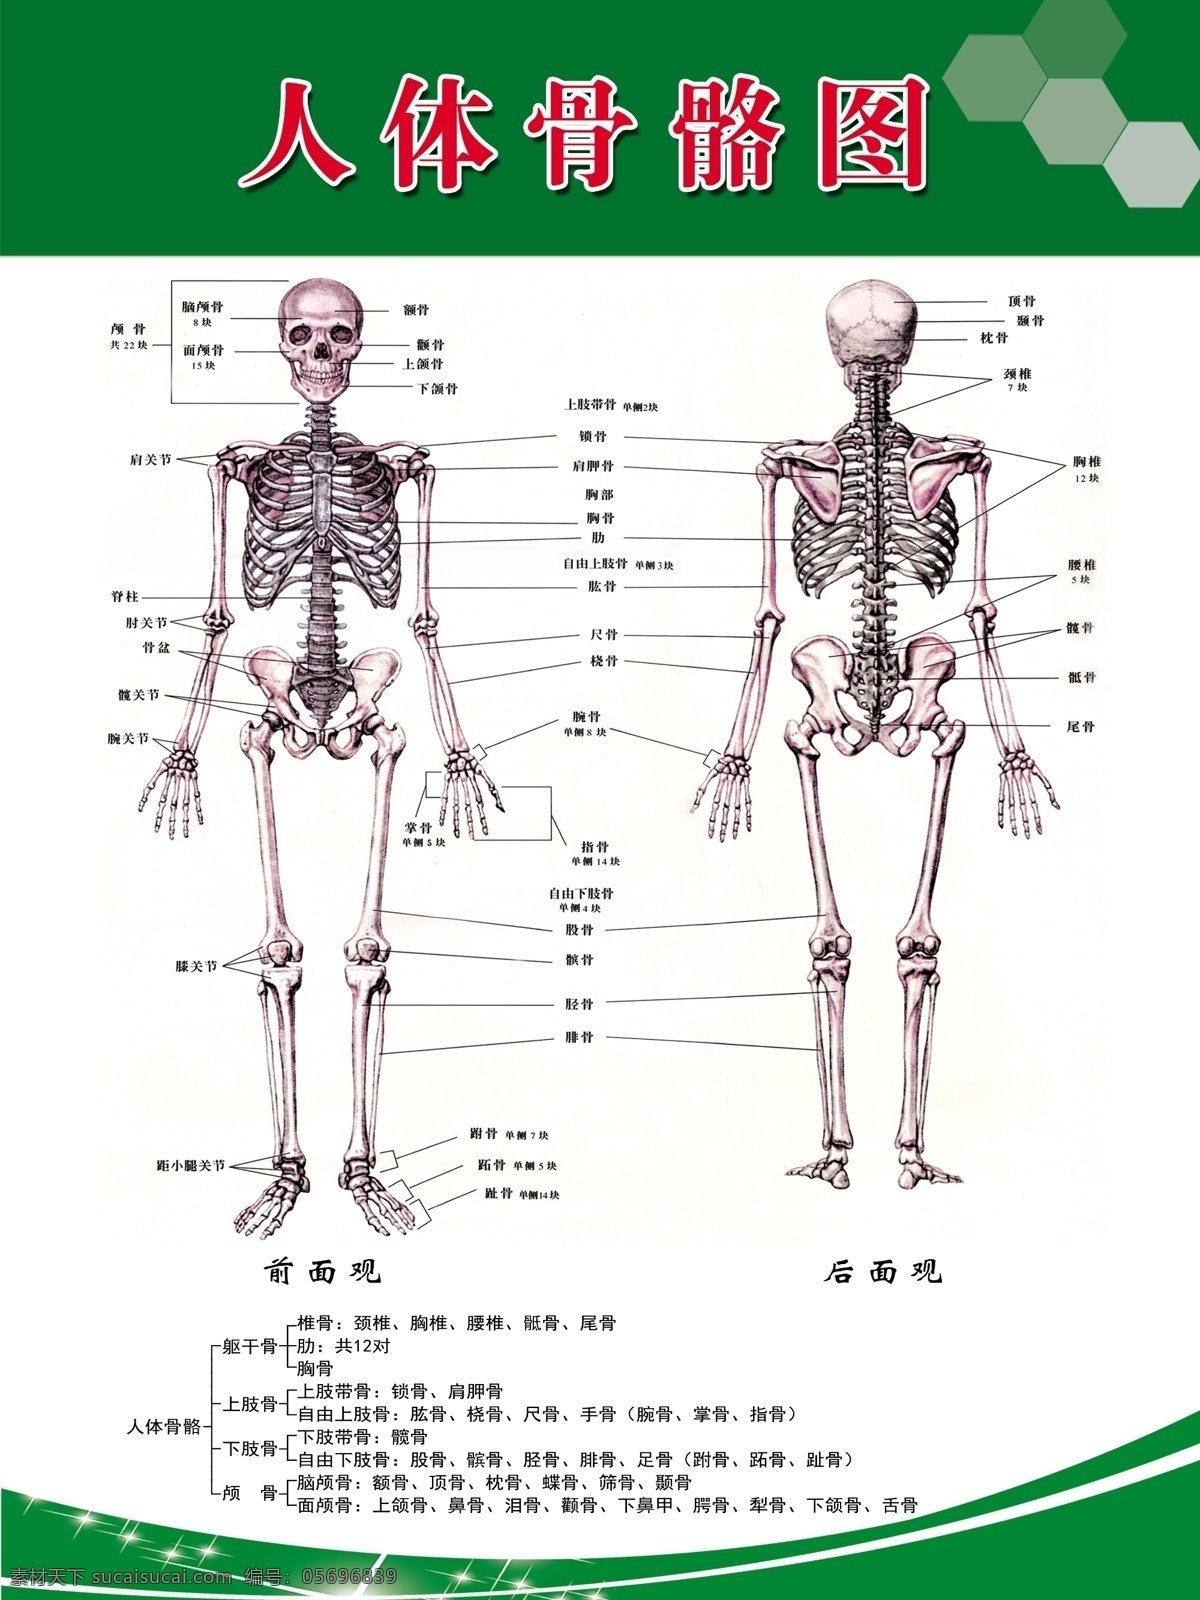 人体 骨骼 图 海报 绿色展板背景 人体骨骼 高清 层 分解 原创设计 原创海报